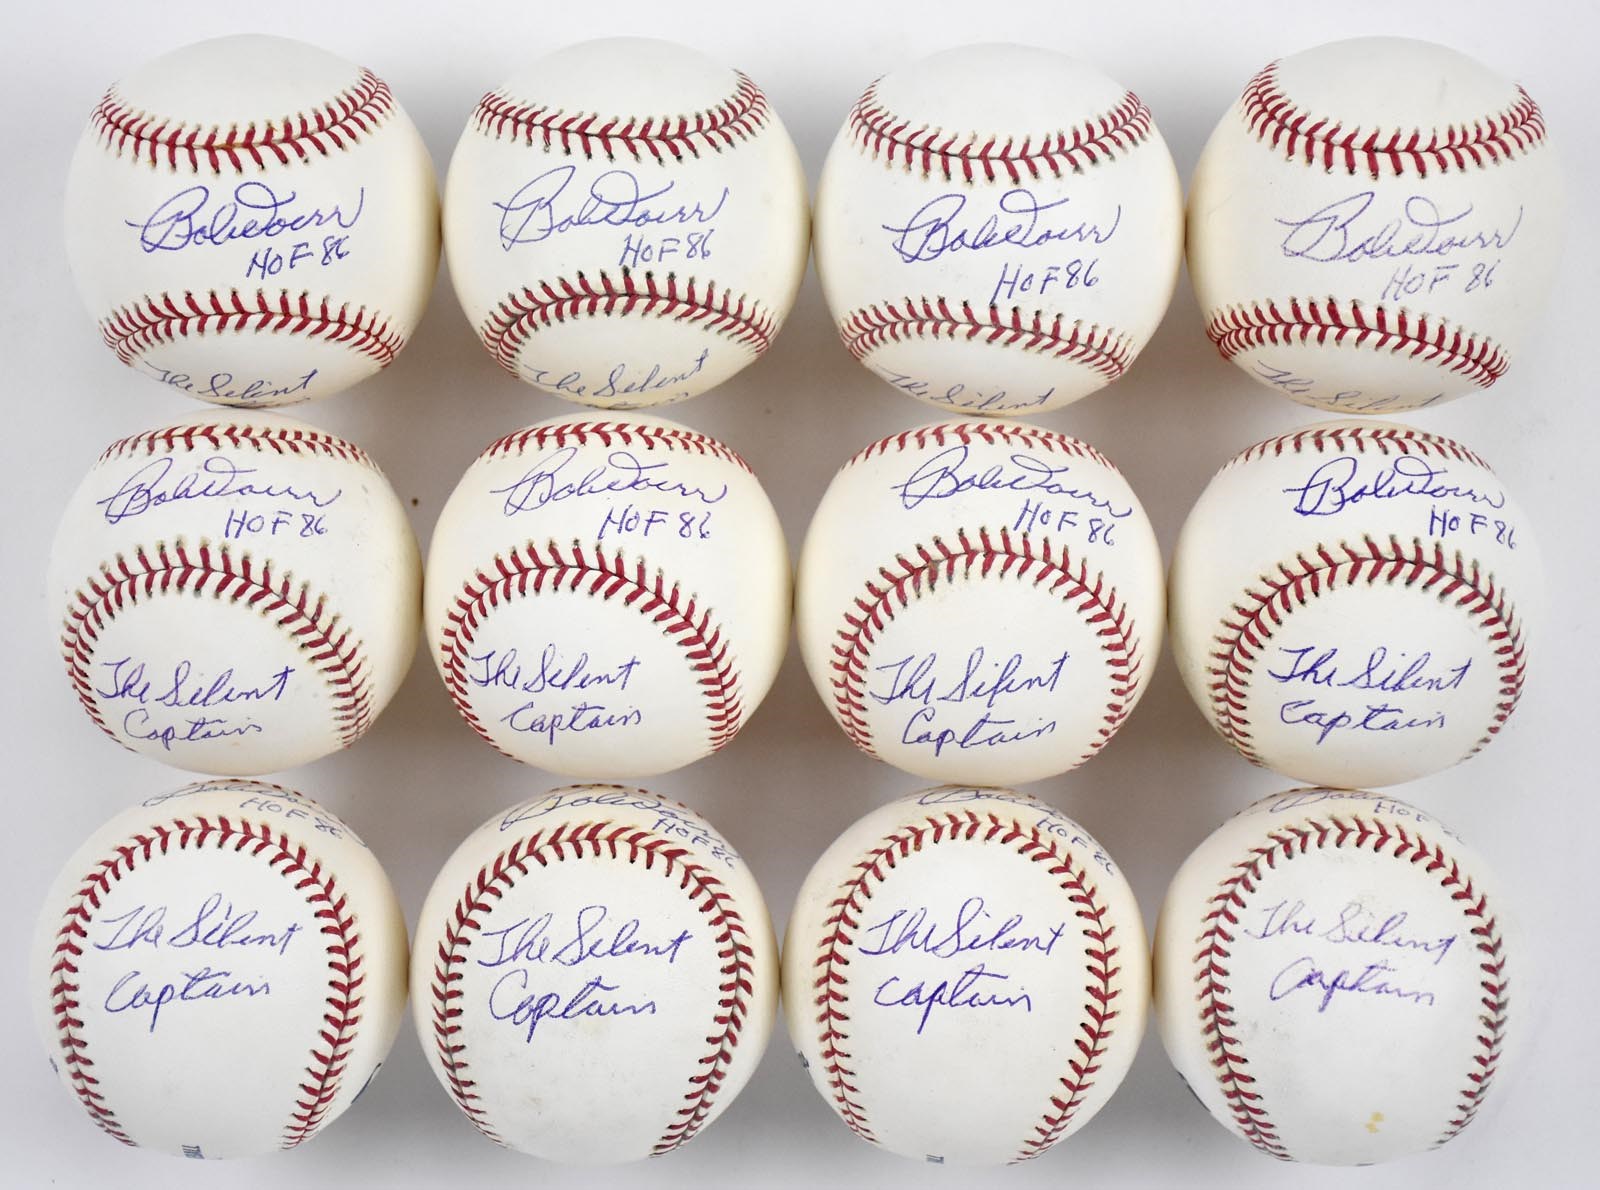 One Dozen Bobby Doerr "The Silent Captain" Single Signed Baseballs (12)